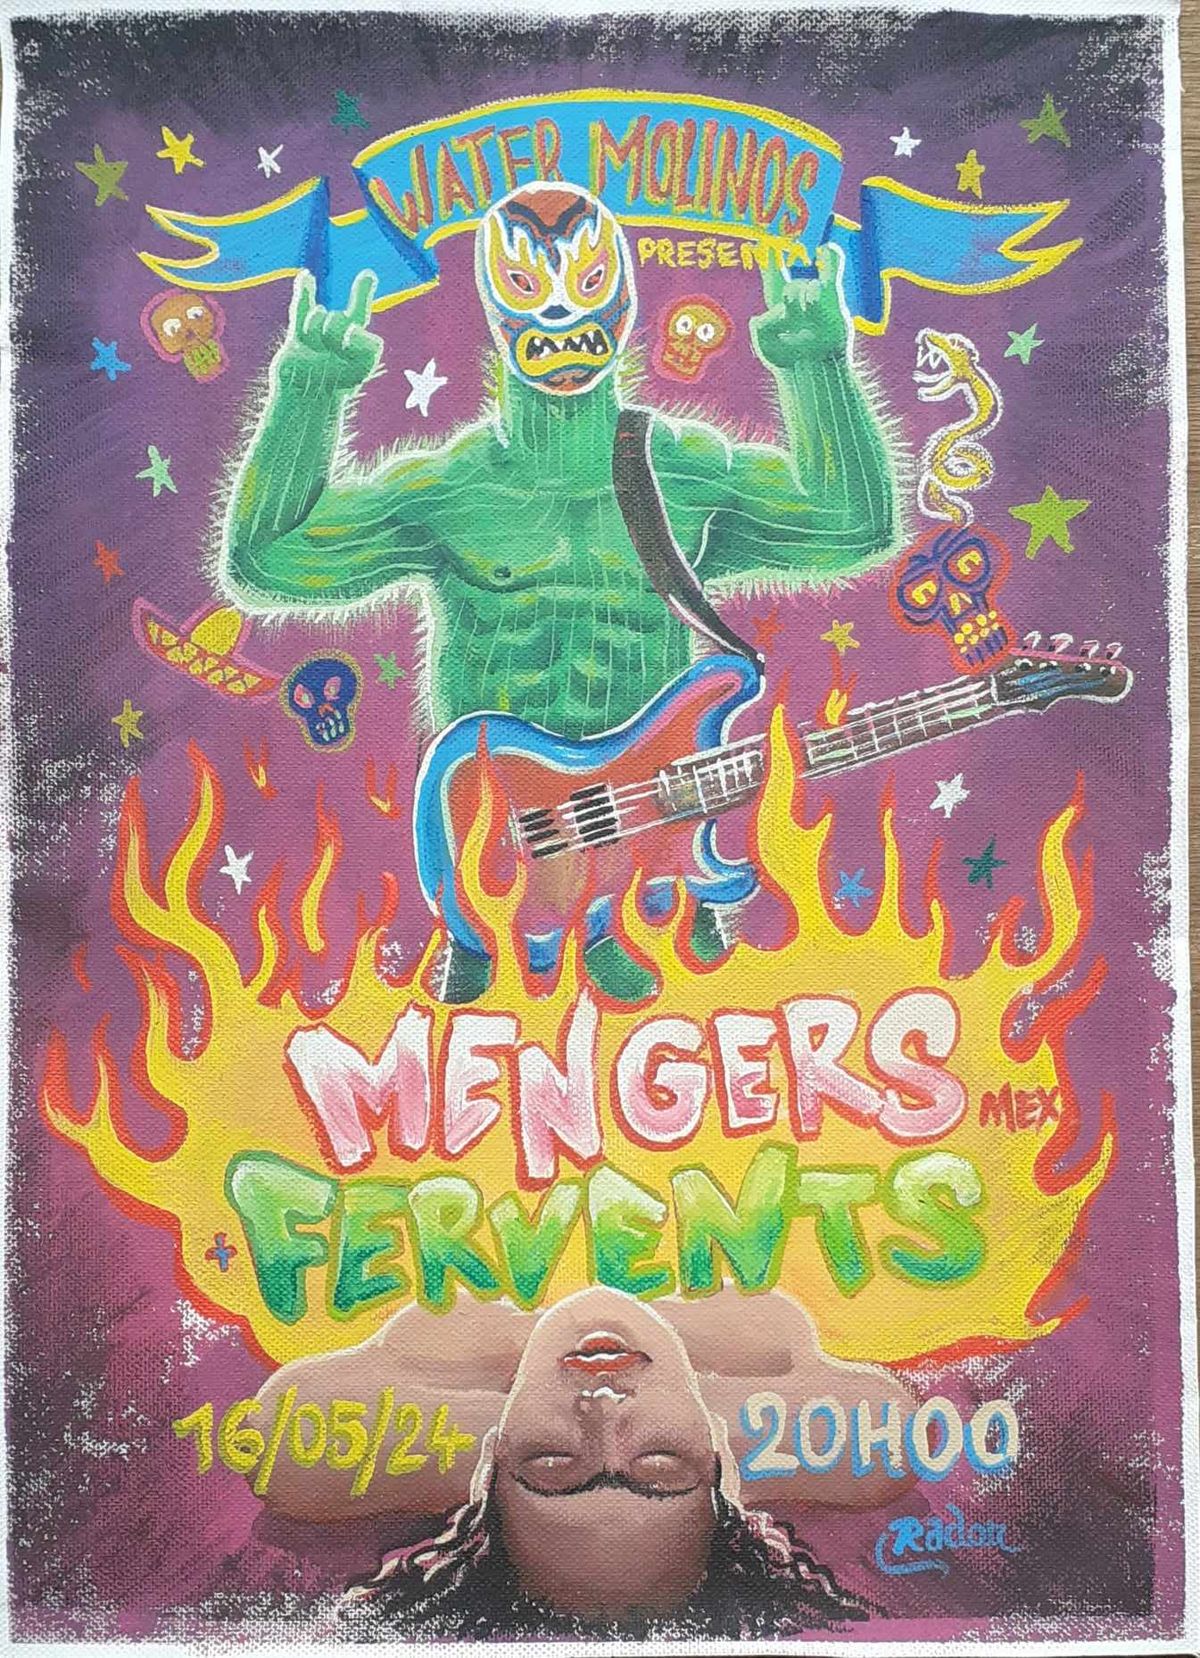 Mengers (Mex) - Fervents